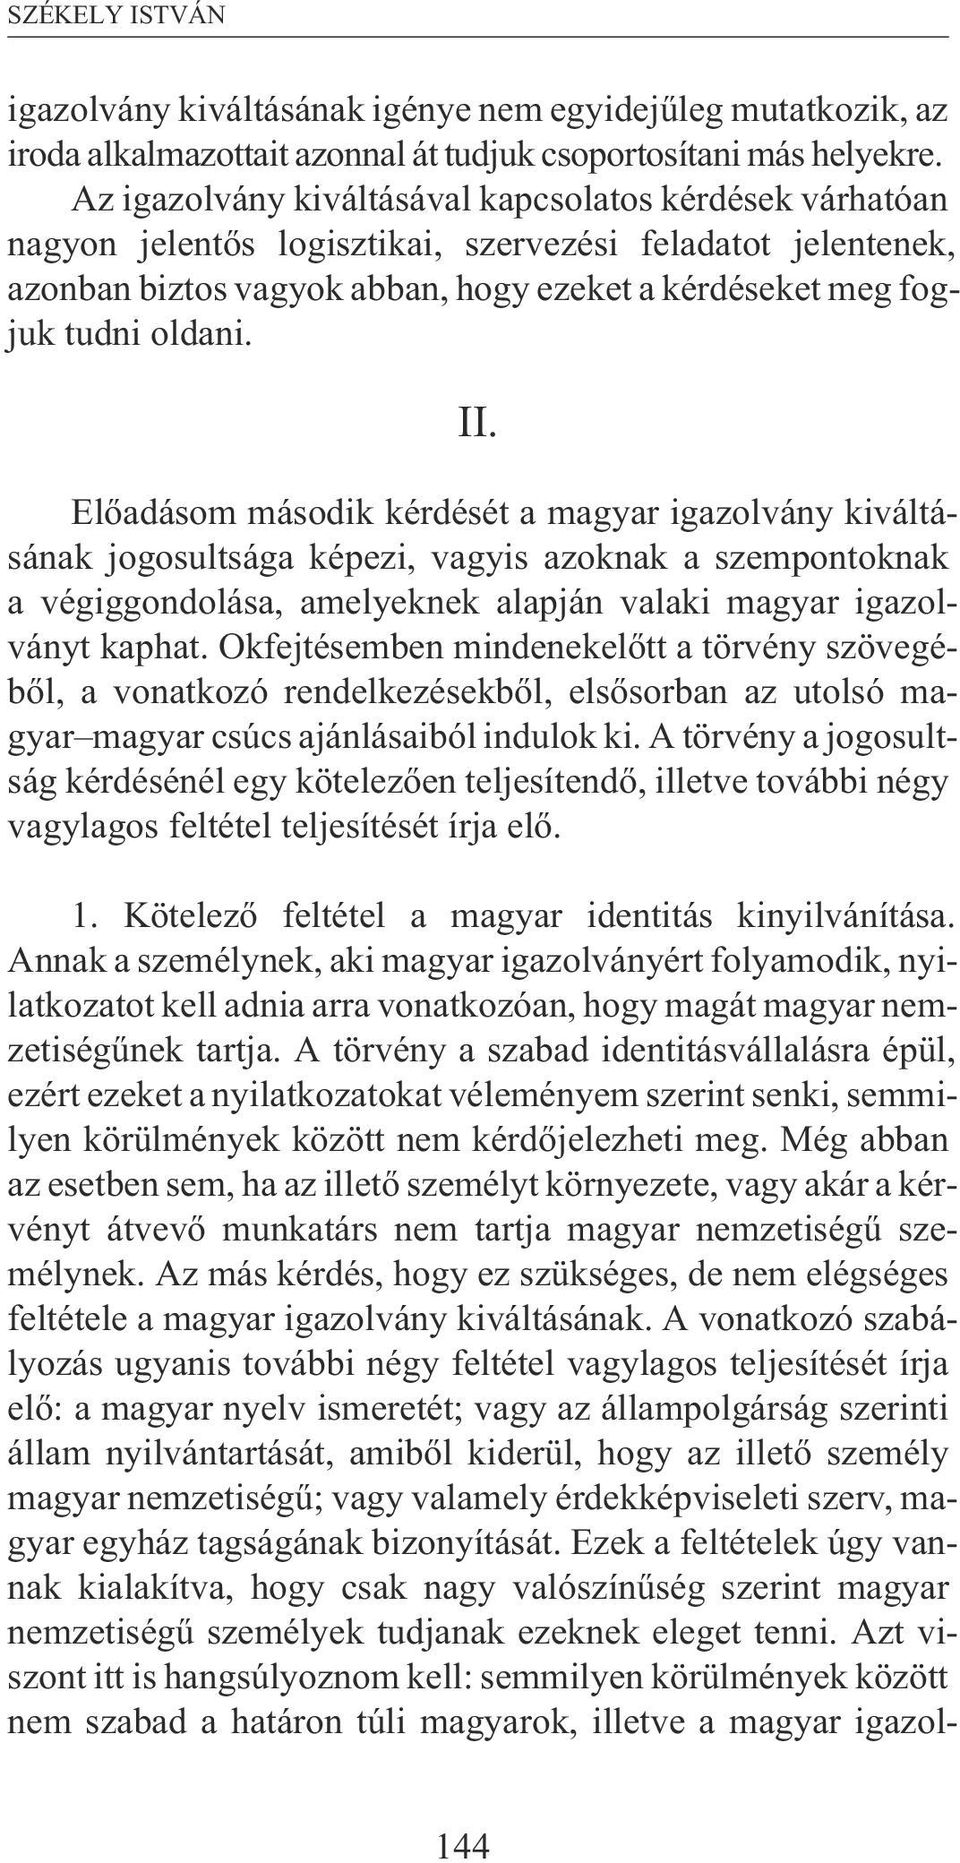 II. Elõadásom második kérdését a magyar igazolvány kiváltásának jogosultsága képezi, vagyis azoknak a szempontoknak a végiggondolása, amelyeknek alapján valaki magyar igazolványt kaphat.